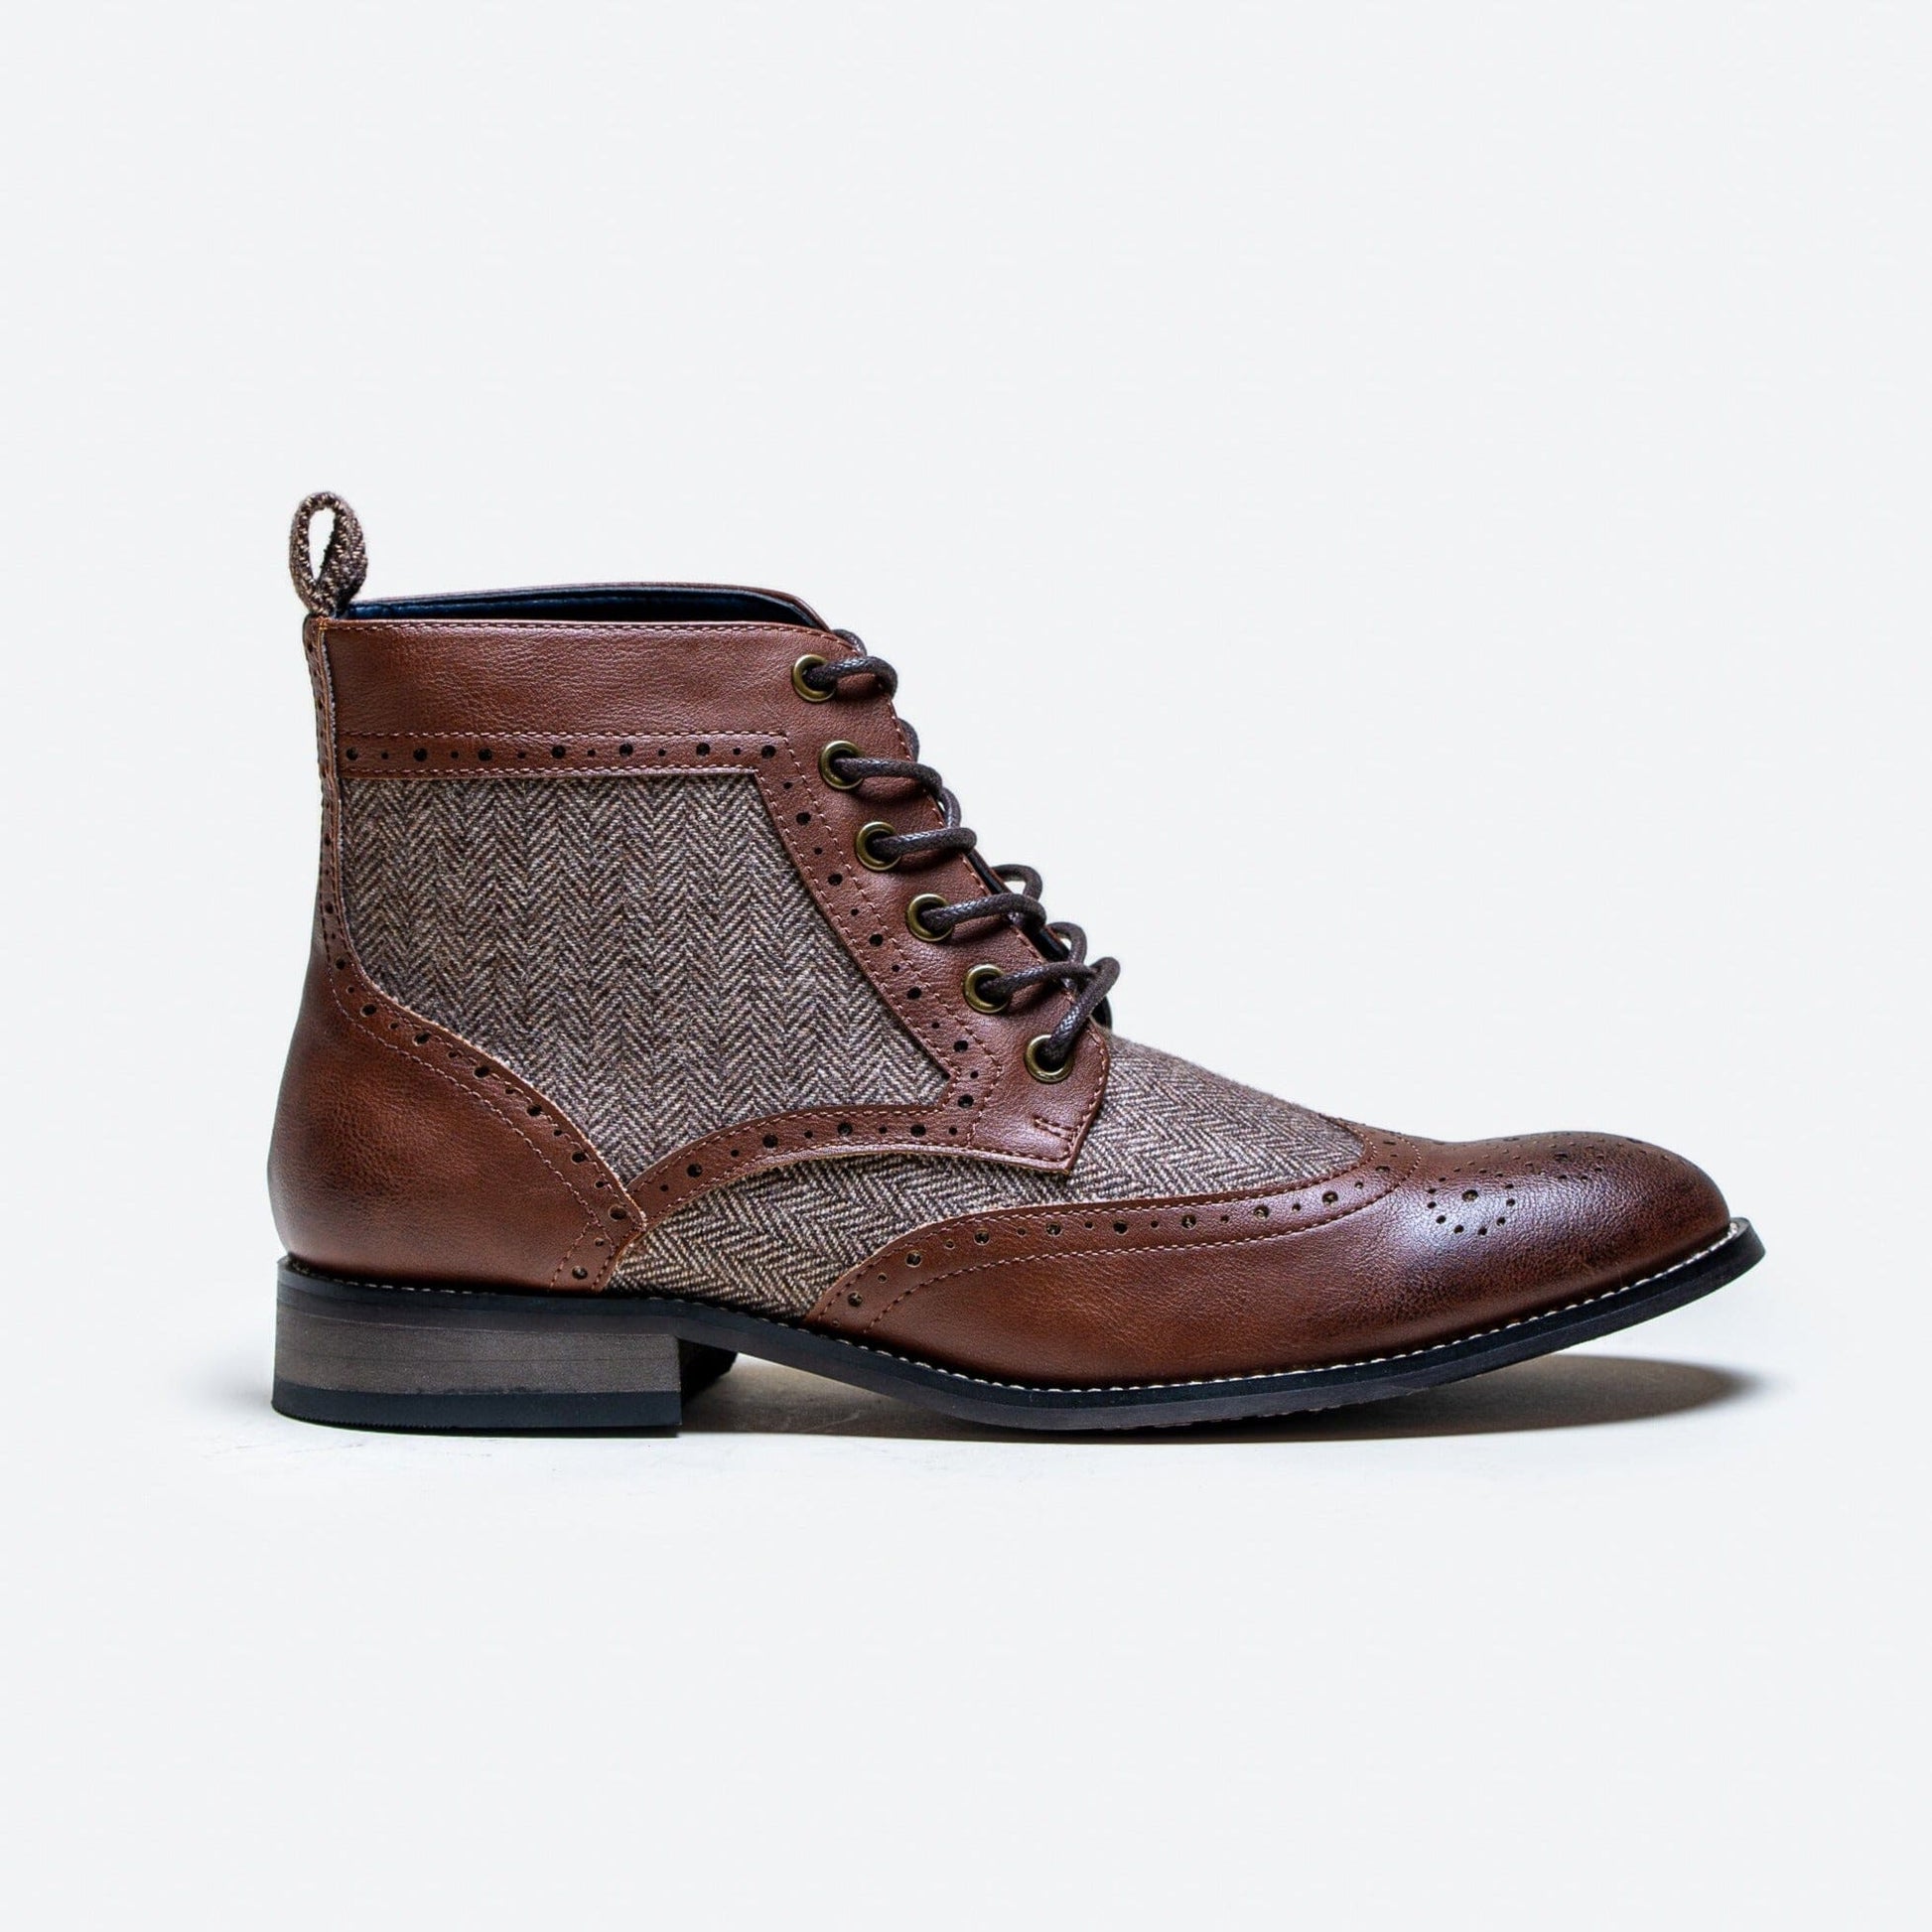 Jones Brown & Tweed Boots - Boots - 7 - THREADPEPPER